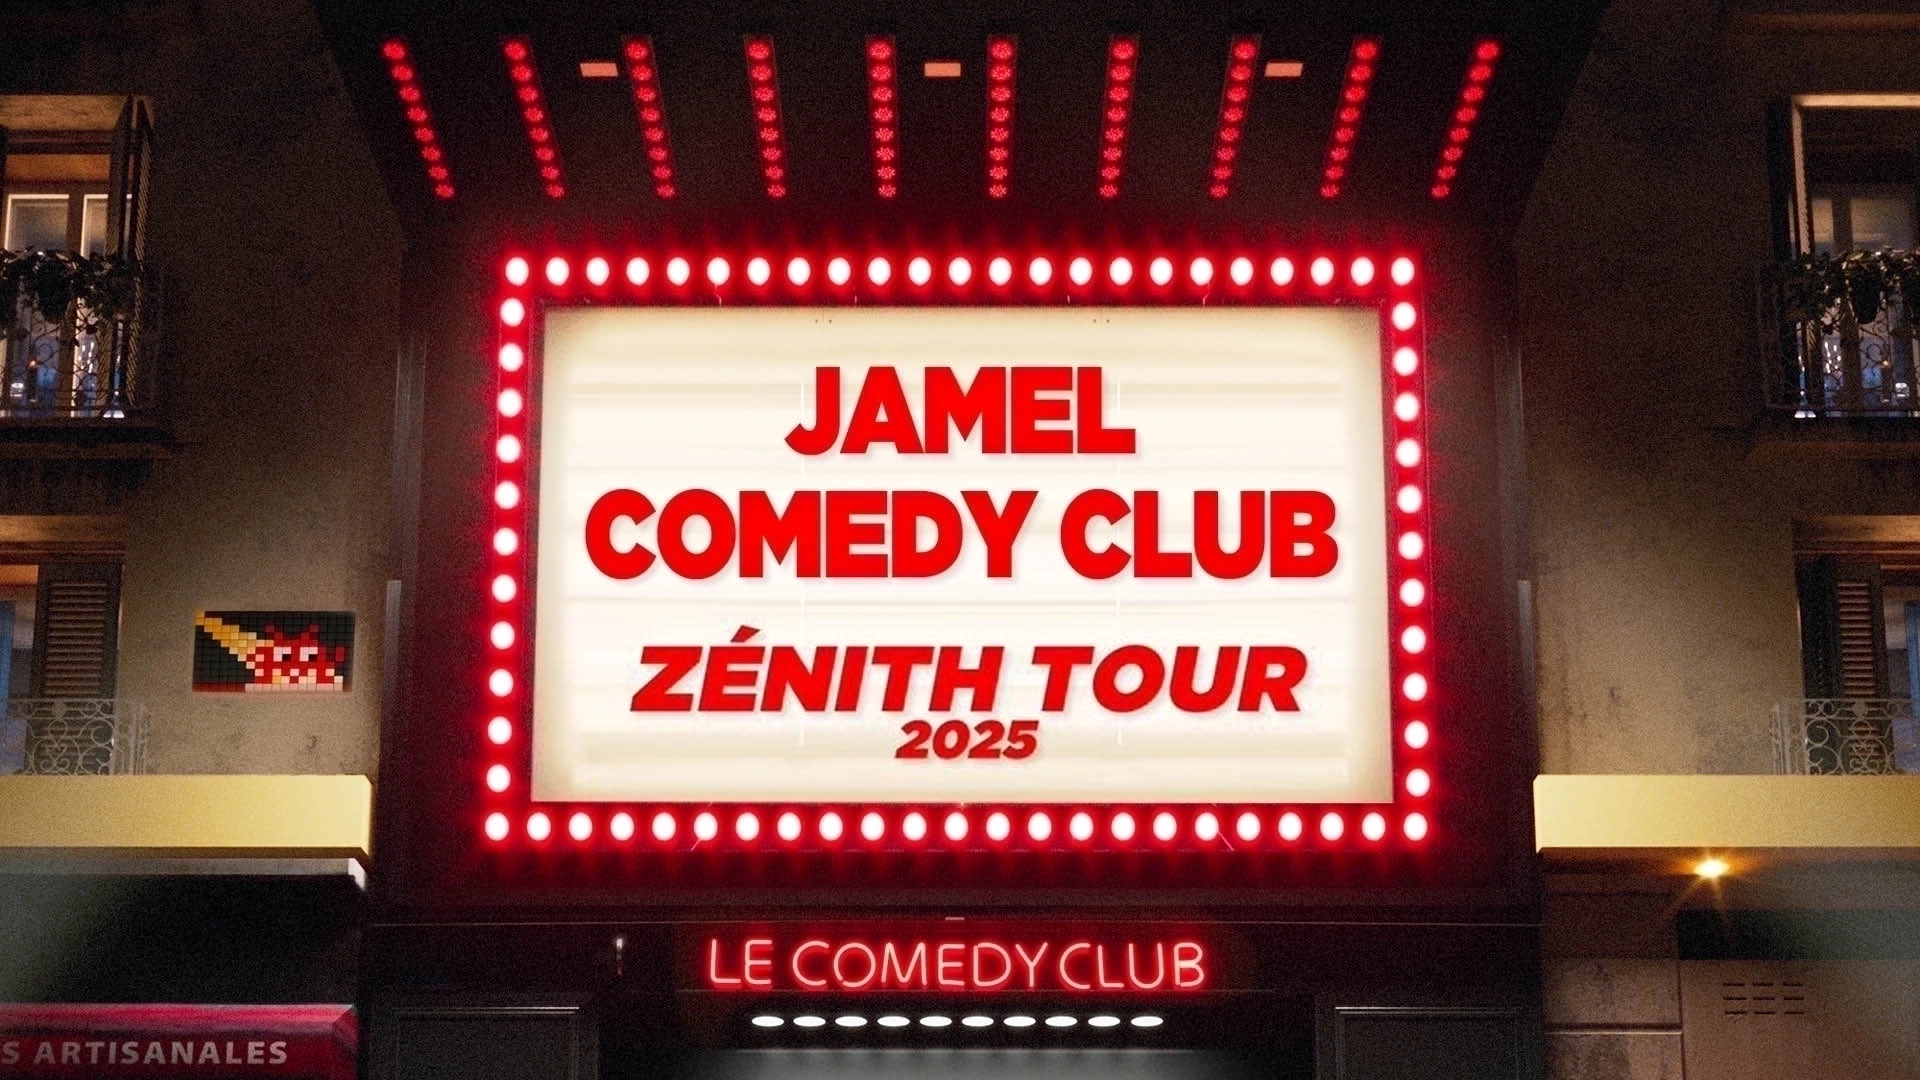 Jamel Comedy Club Zenith Tour 2025 al Palais Nikaia Tickets